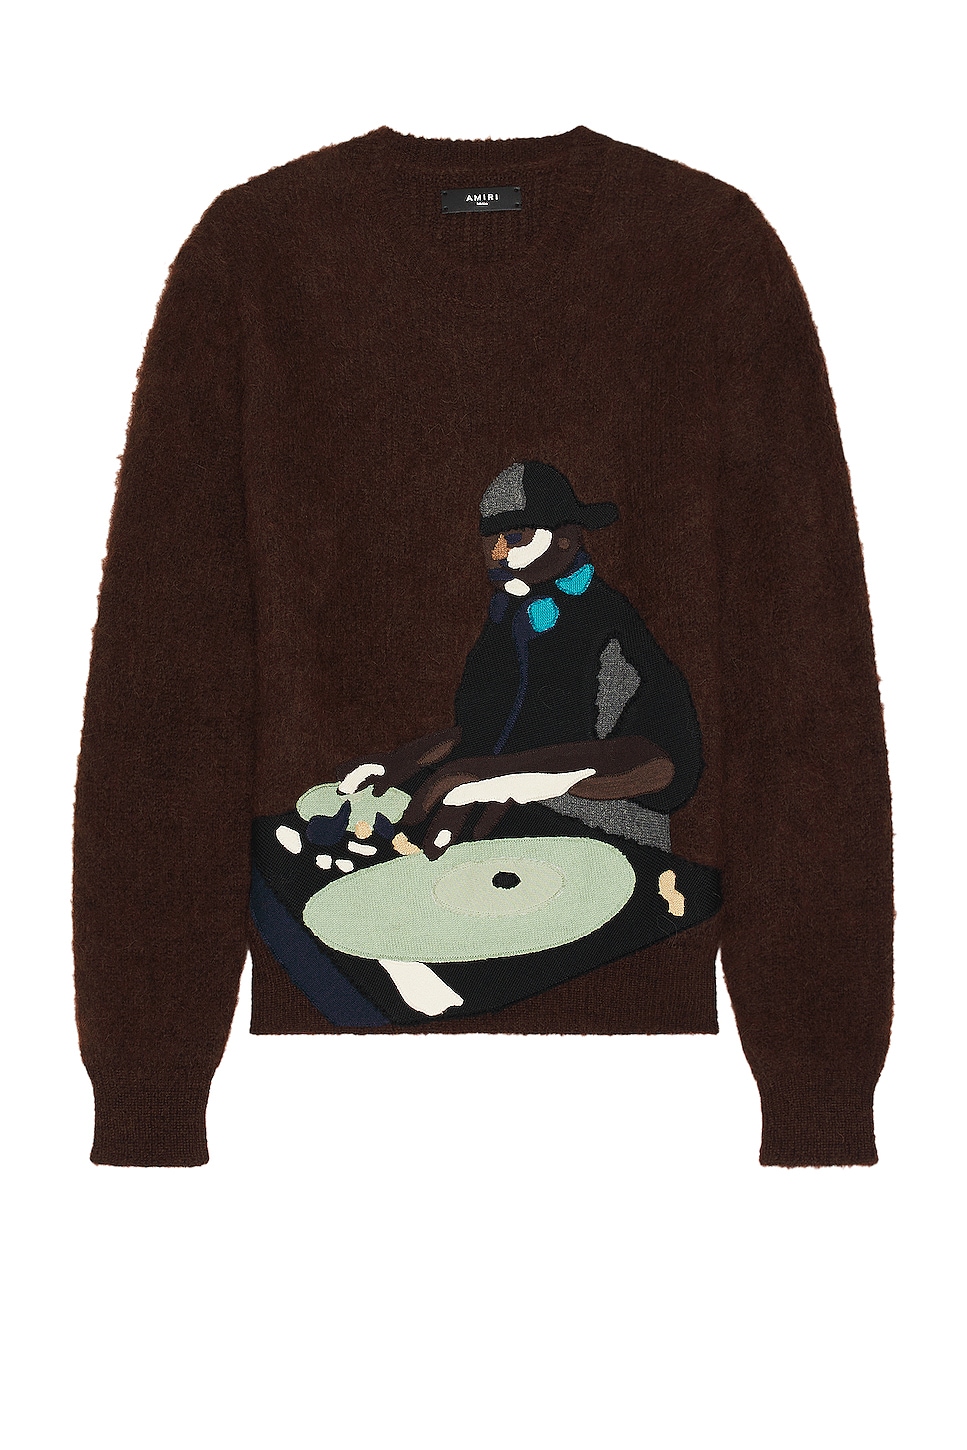 Amiri Turn Table Sweater in Brown | FWRD